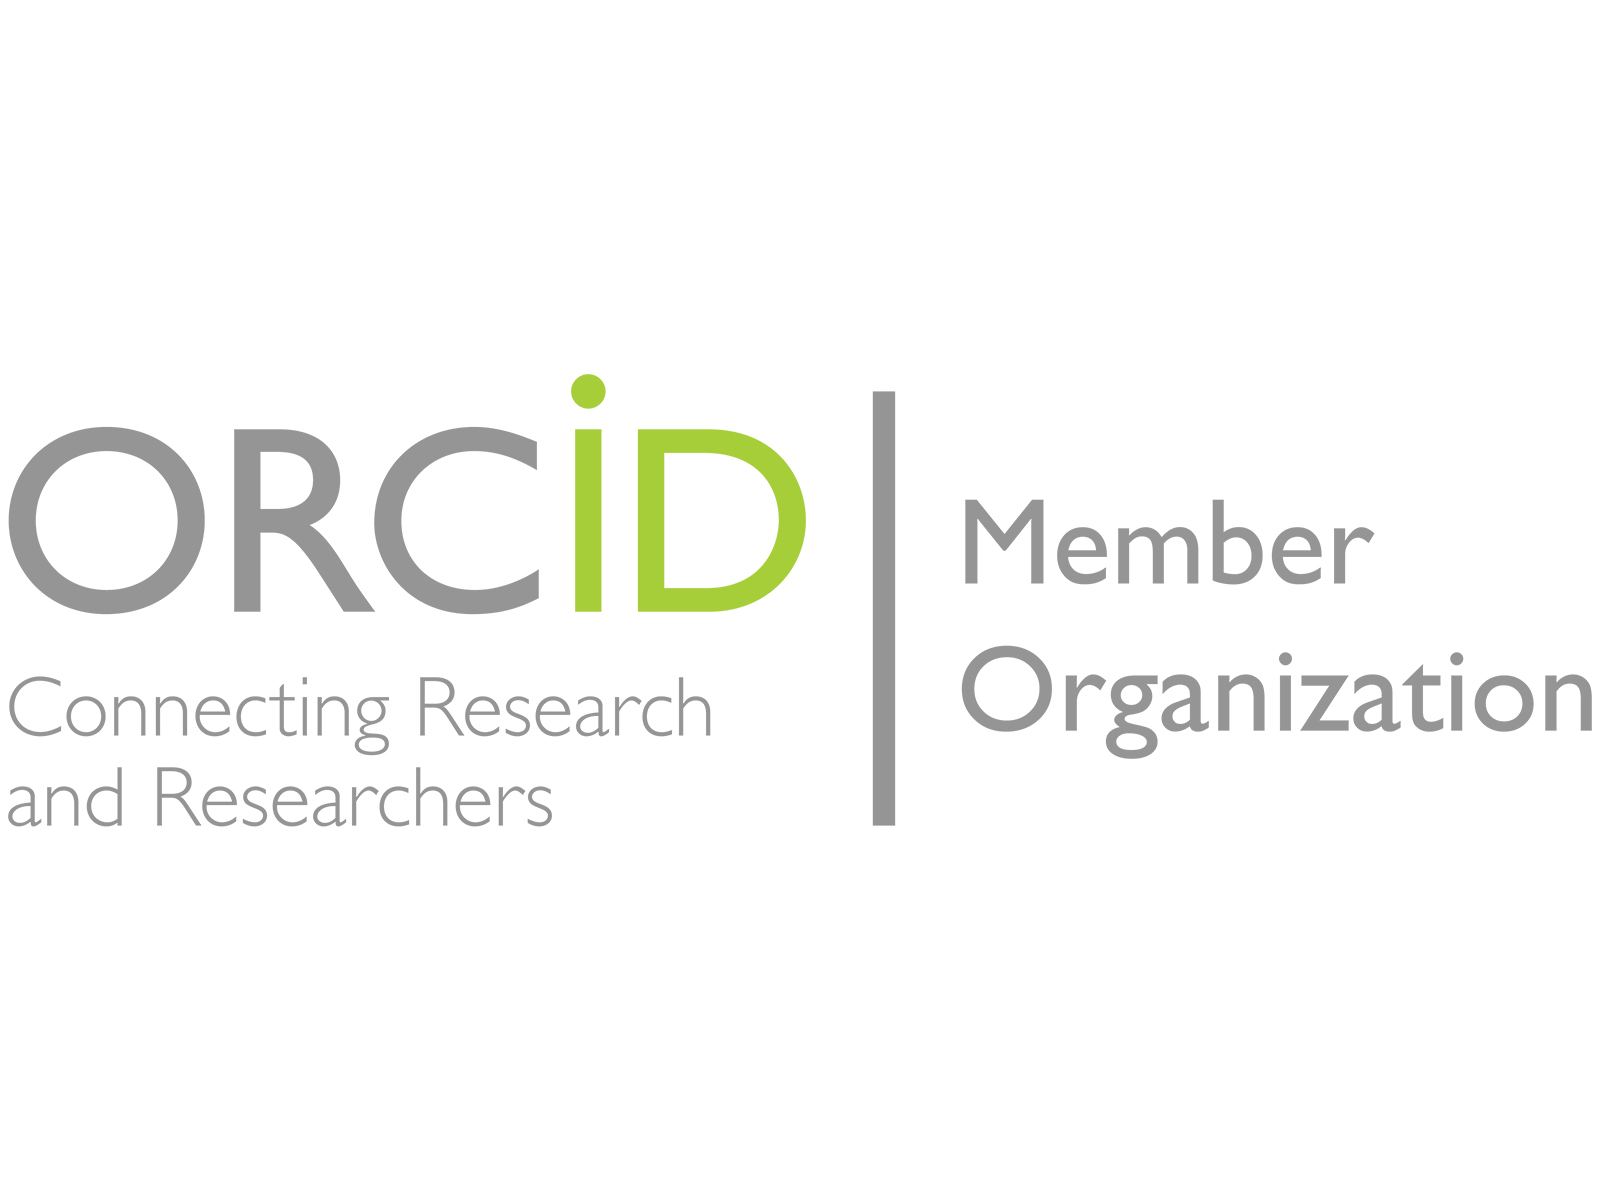 ORCID-Member-Organization.jpg